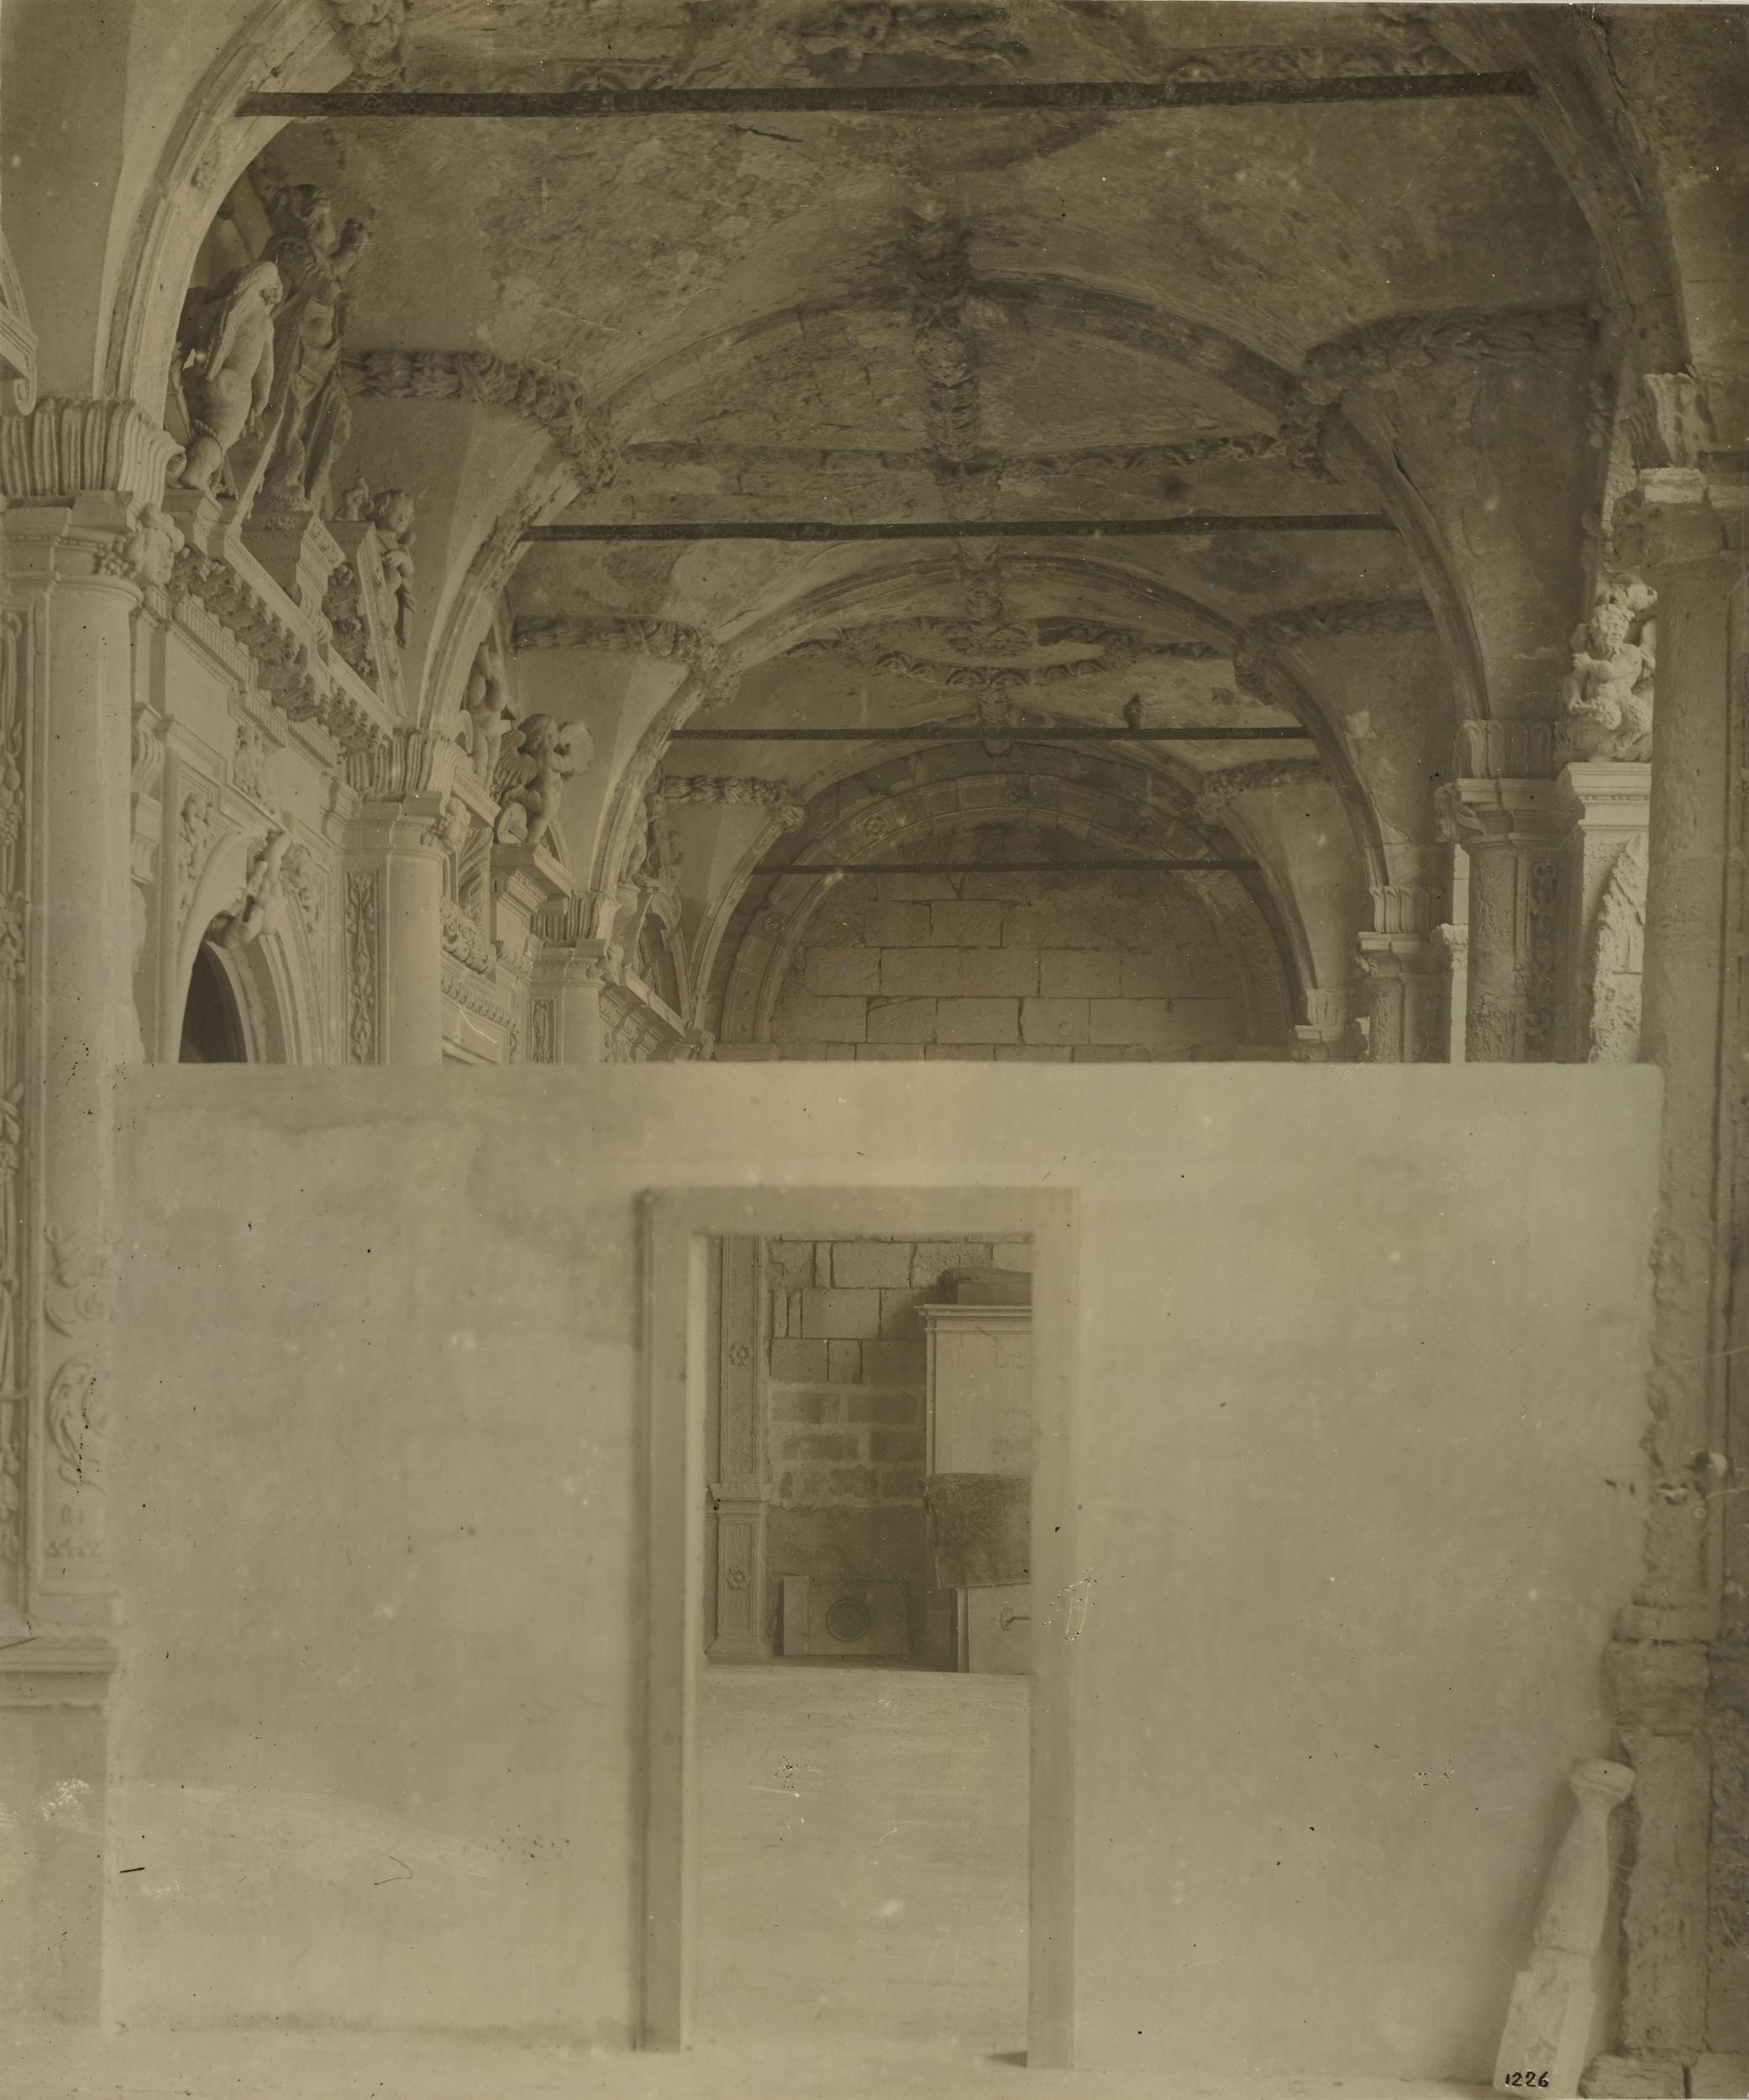 Fotografo non identificato, Barletta - Palazzo Montalto della Marra, la loggia, lavori di sistemazione, 1901-1925, gelatina ai sali d'argento/carta, MPI152545